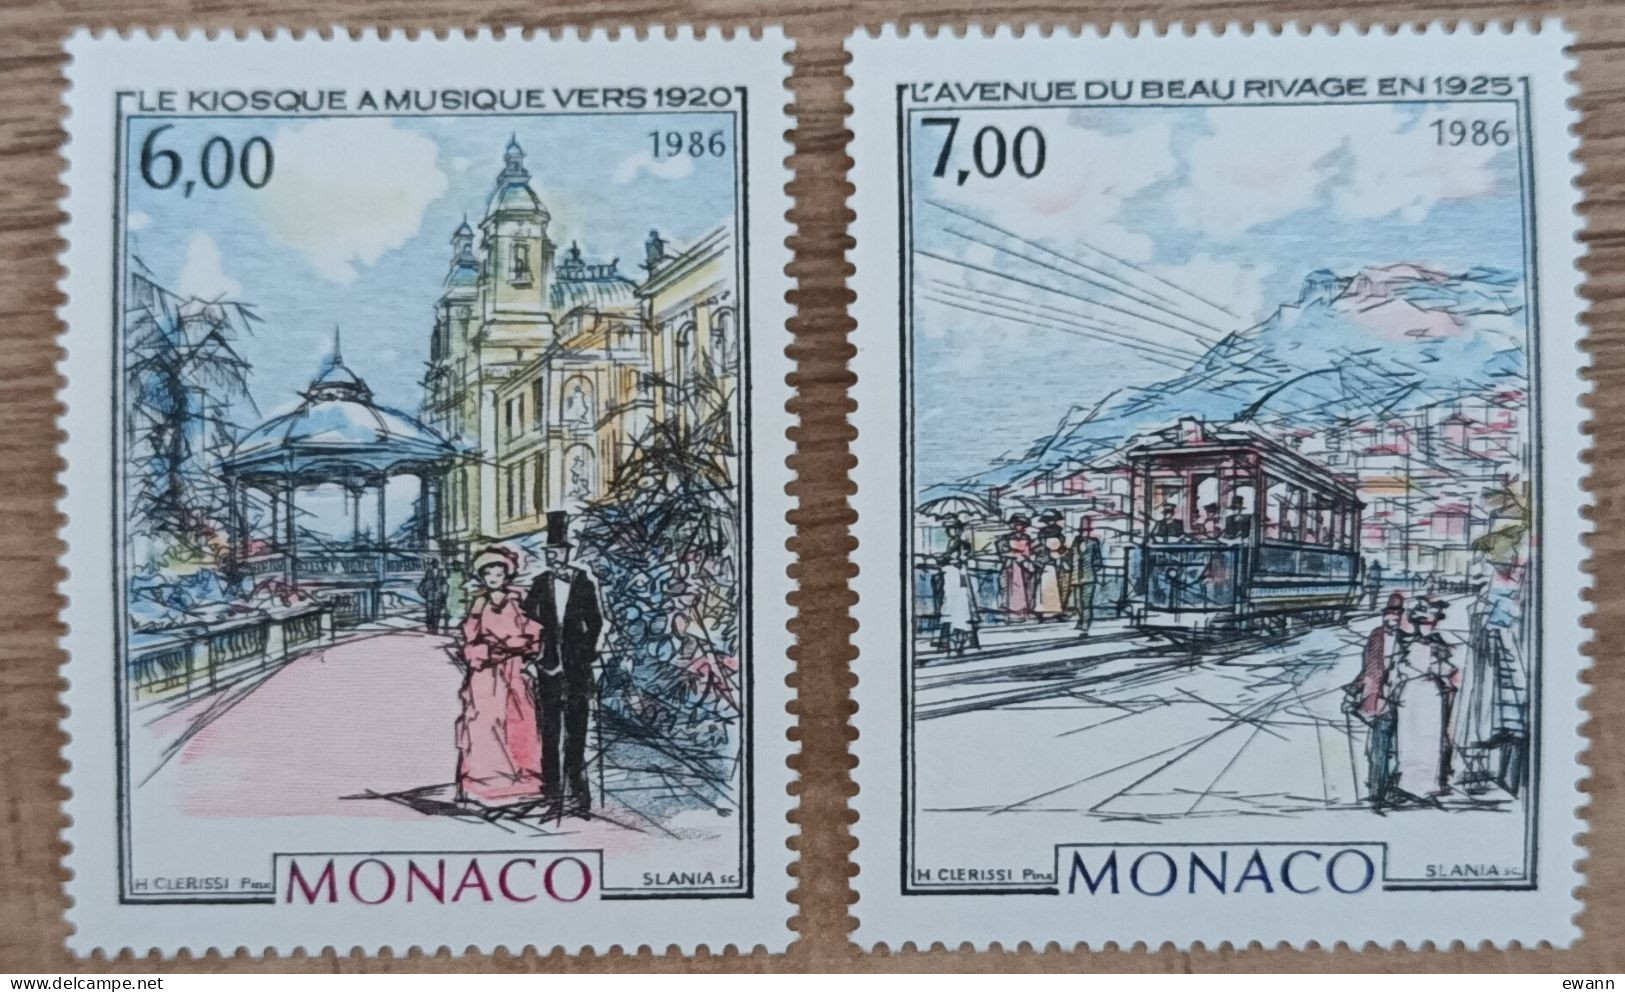 Monaco - YT N°1543, 1544 - Monaco à La Belle Epoque / Kiosque à Musique / Avenue Du Beau Rivage - 1986 - Neuf - Nuevos